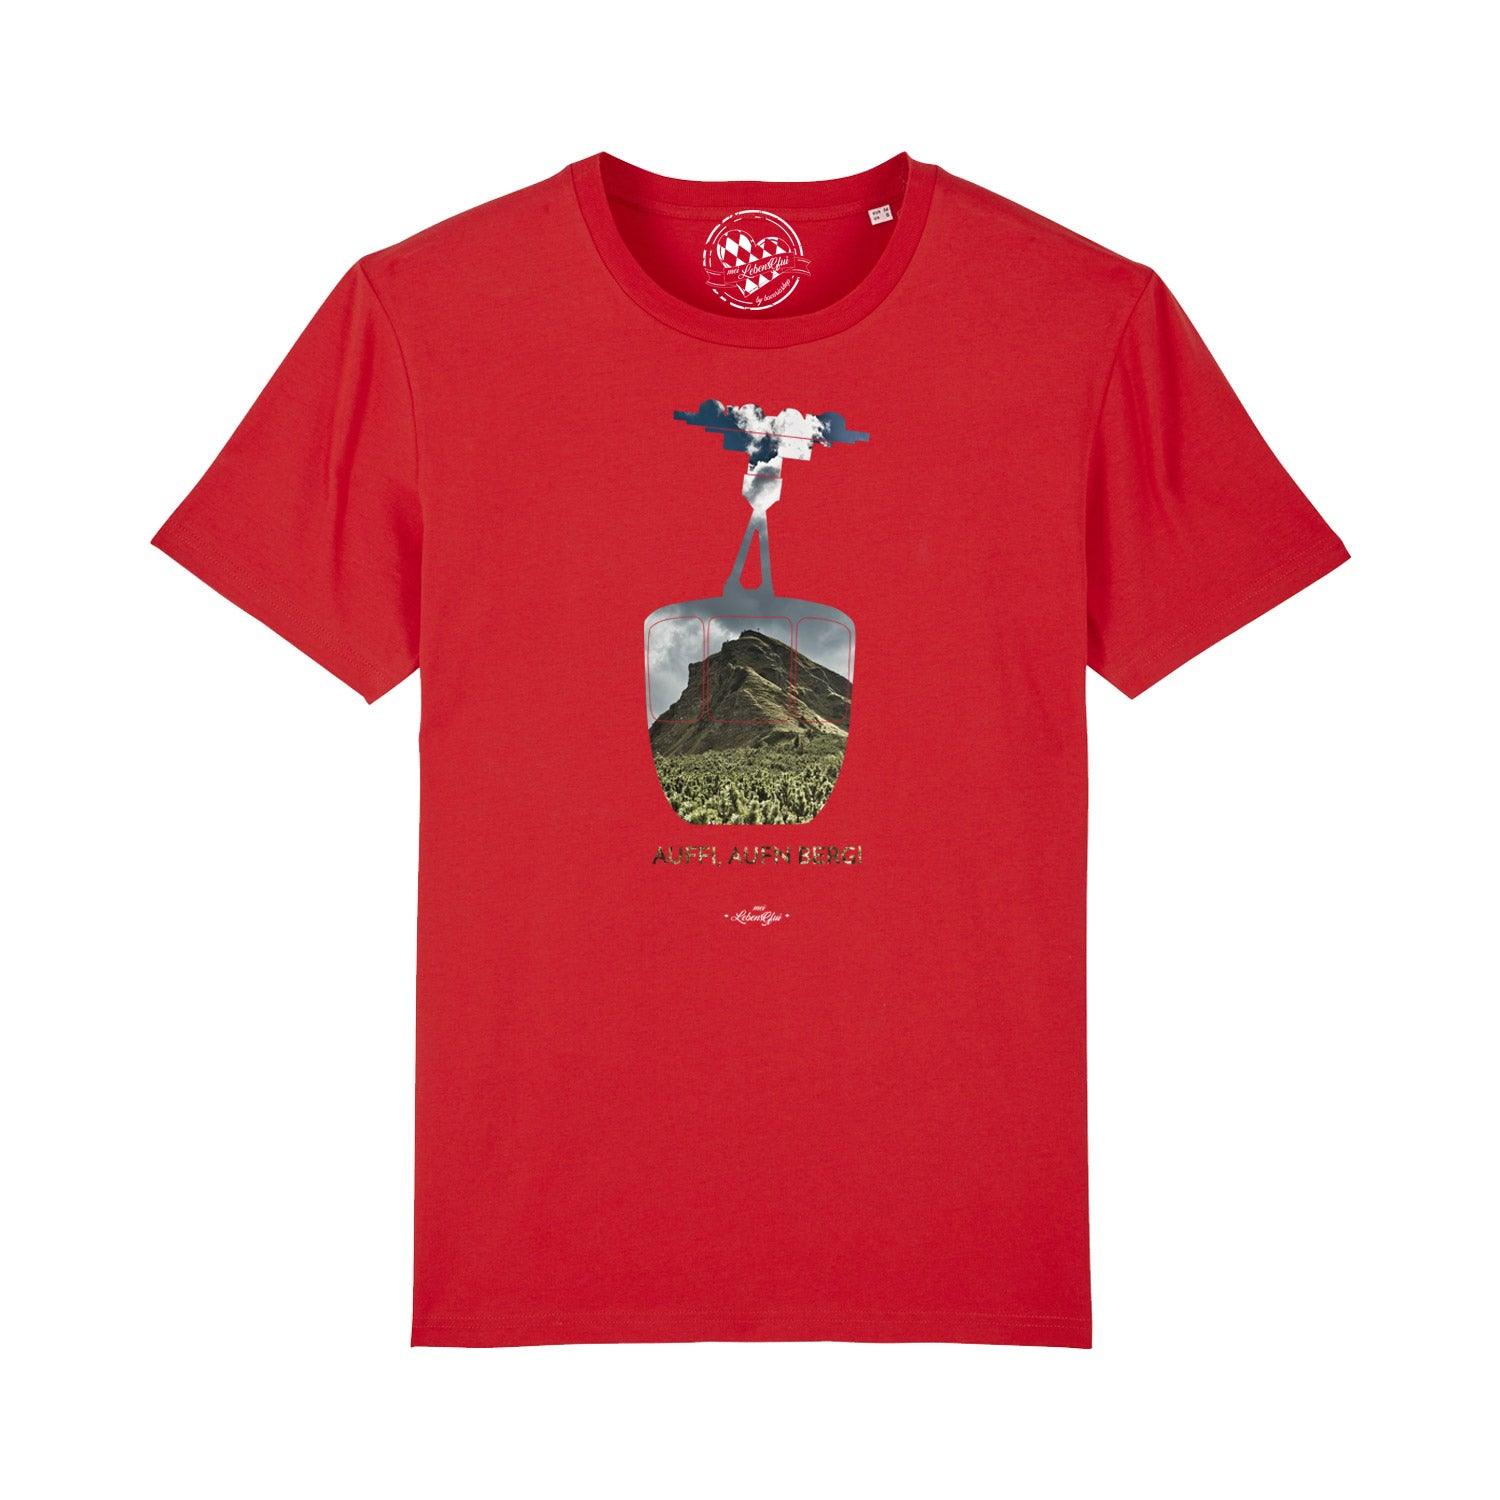 Herren T-Shirt "Auffi, aufn Berg!" - bavariashop - mei LebensGfui